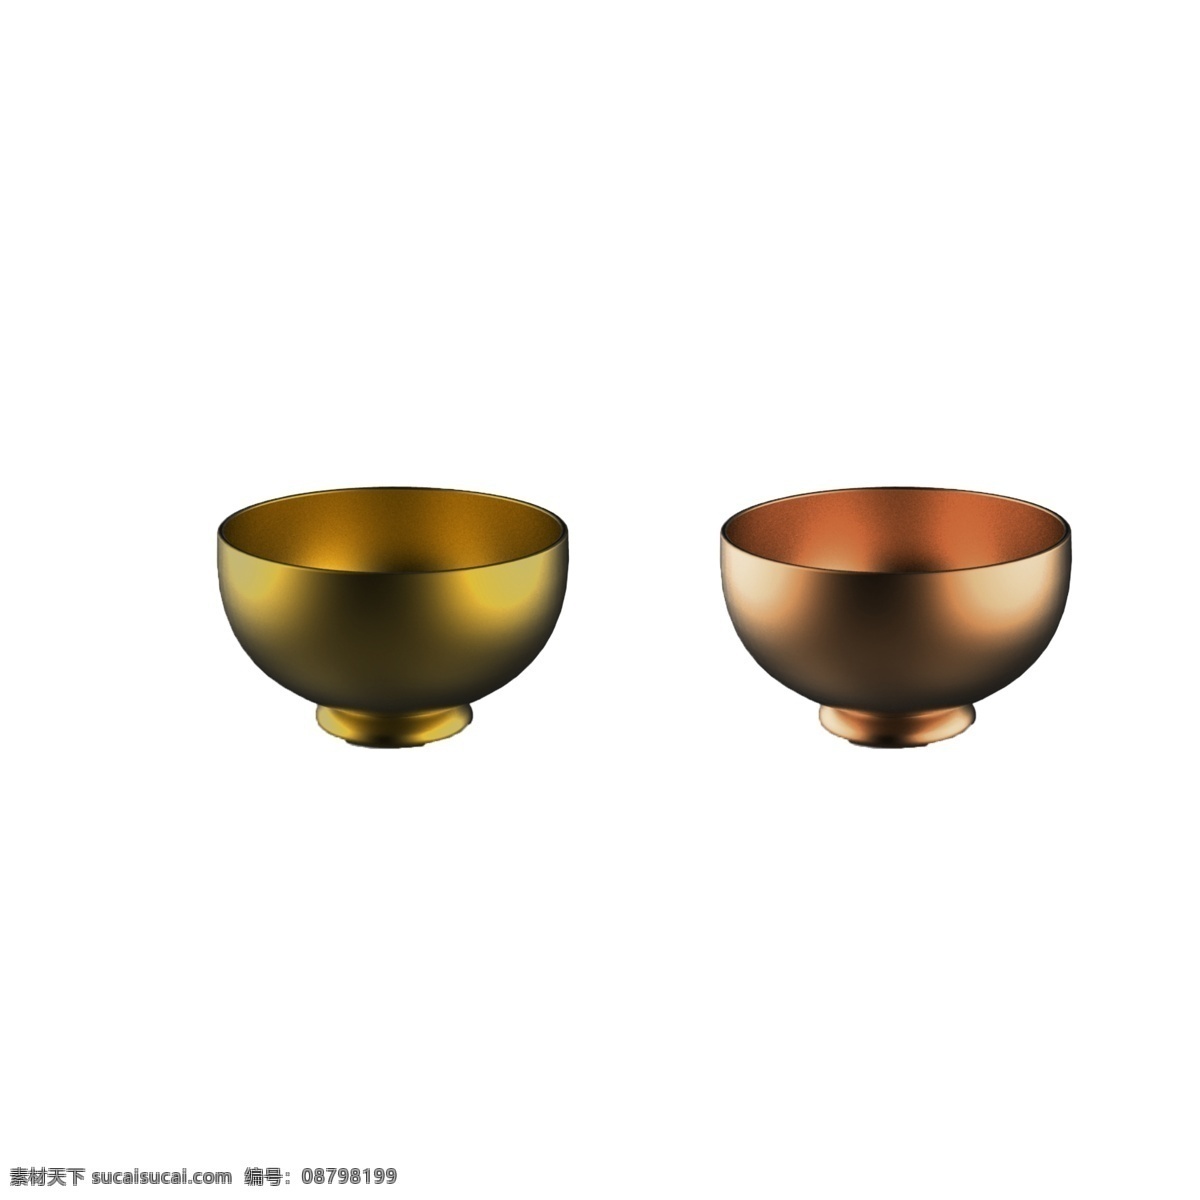 铜 碗 实物 免 抠 餐具 金色的碗 铜色的碗 餐具效果图 餐具实物 碗的模型 碗的图案 实物展示 产品